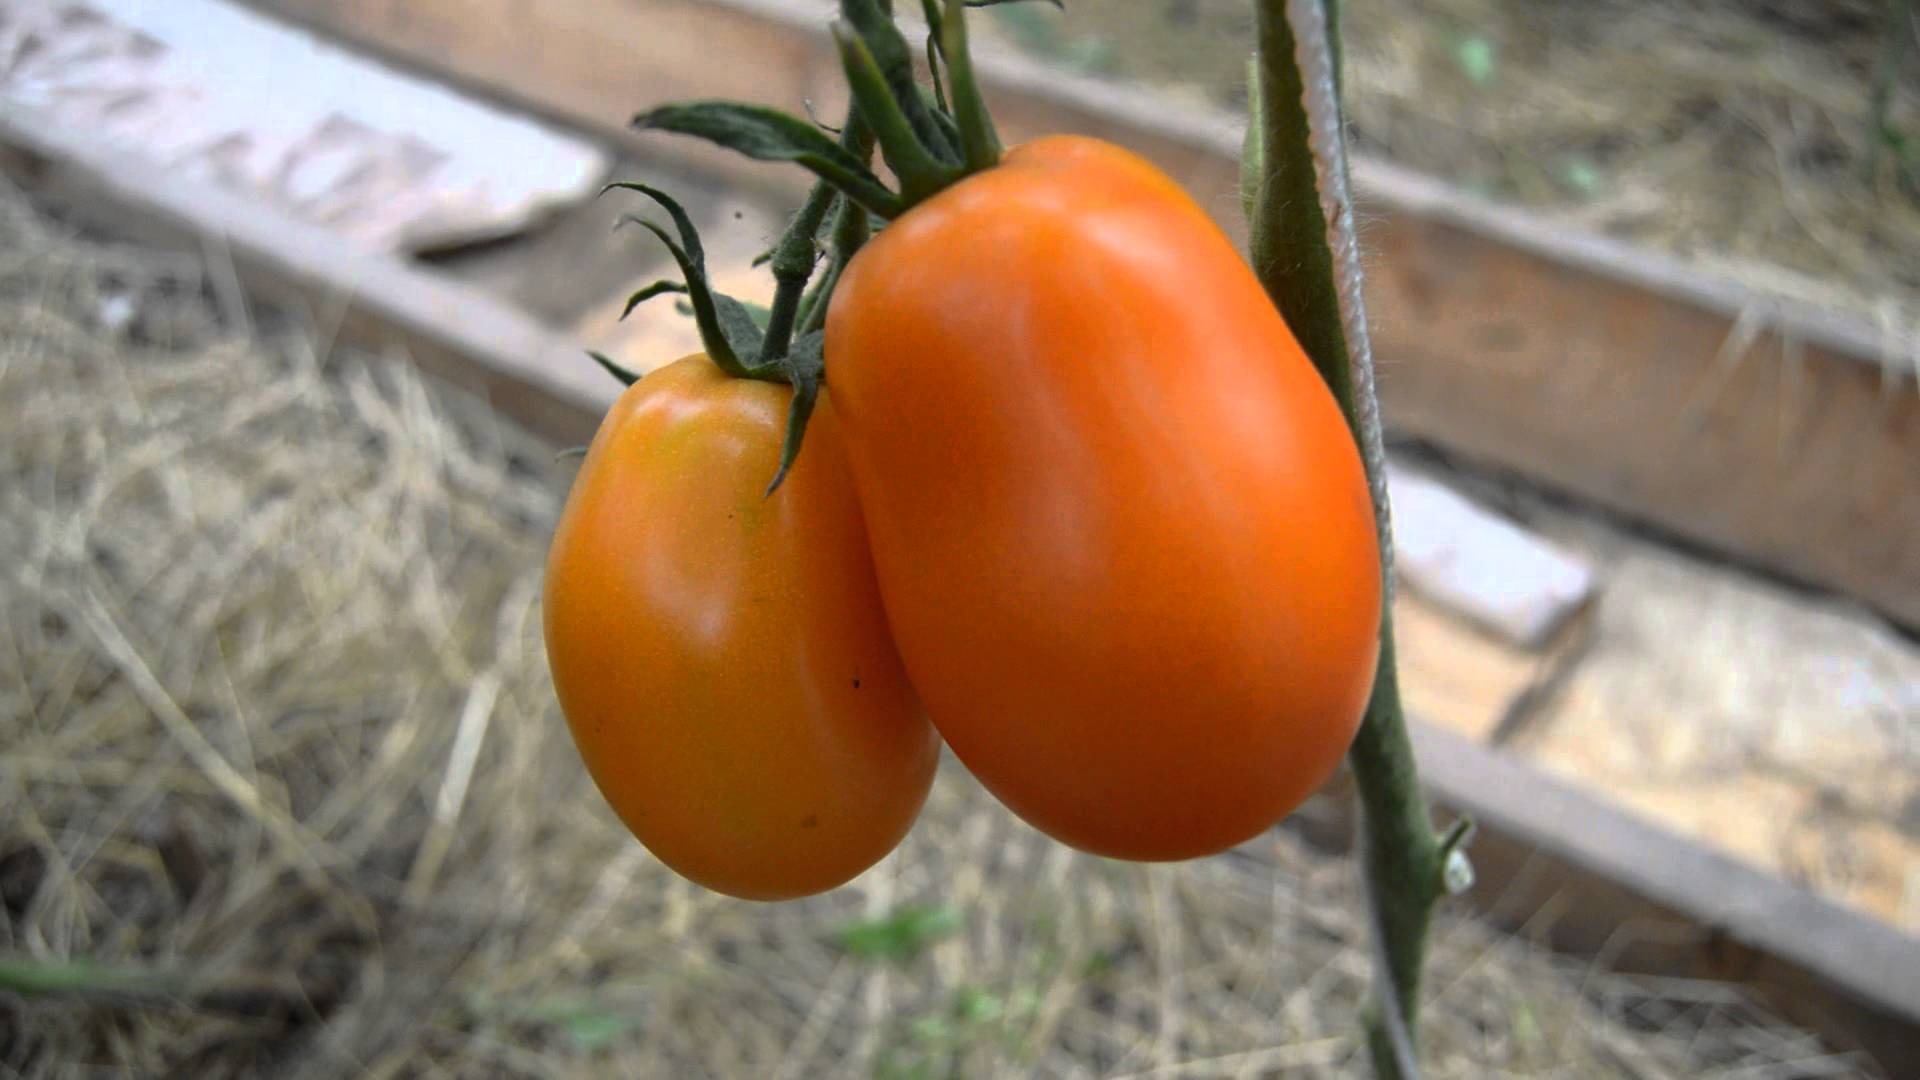 Томат "олеся": характеристика и описание сорта помидор, отзывы